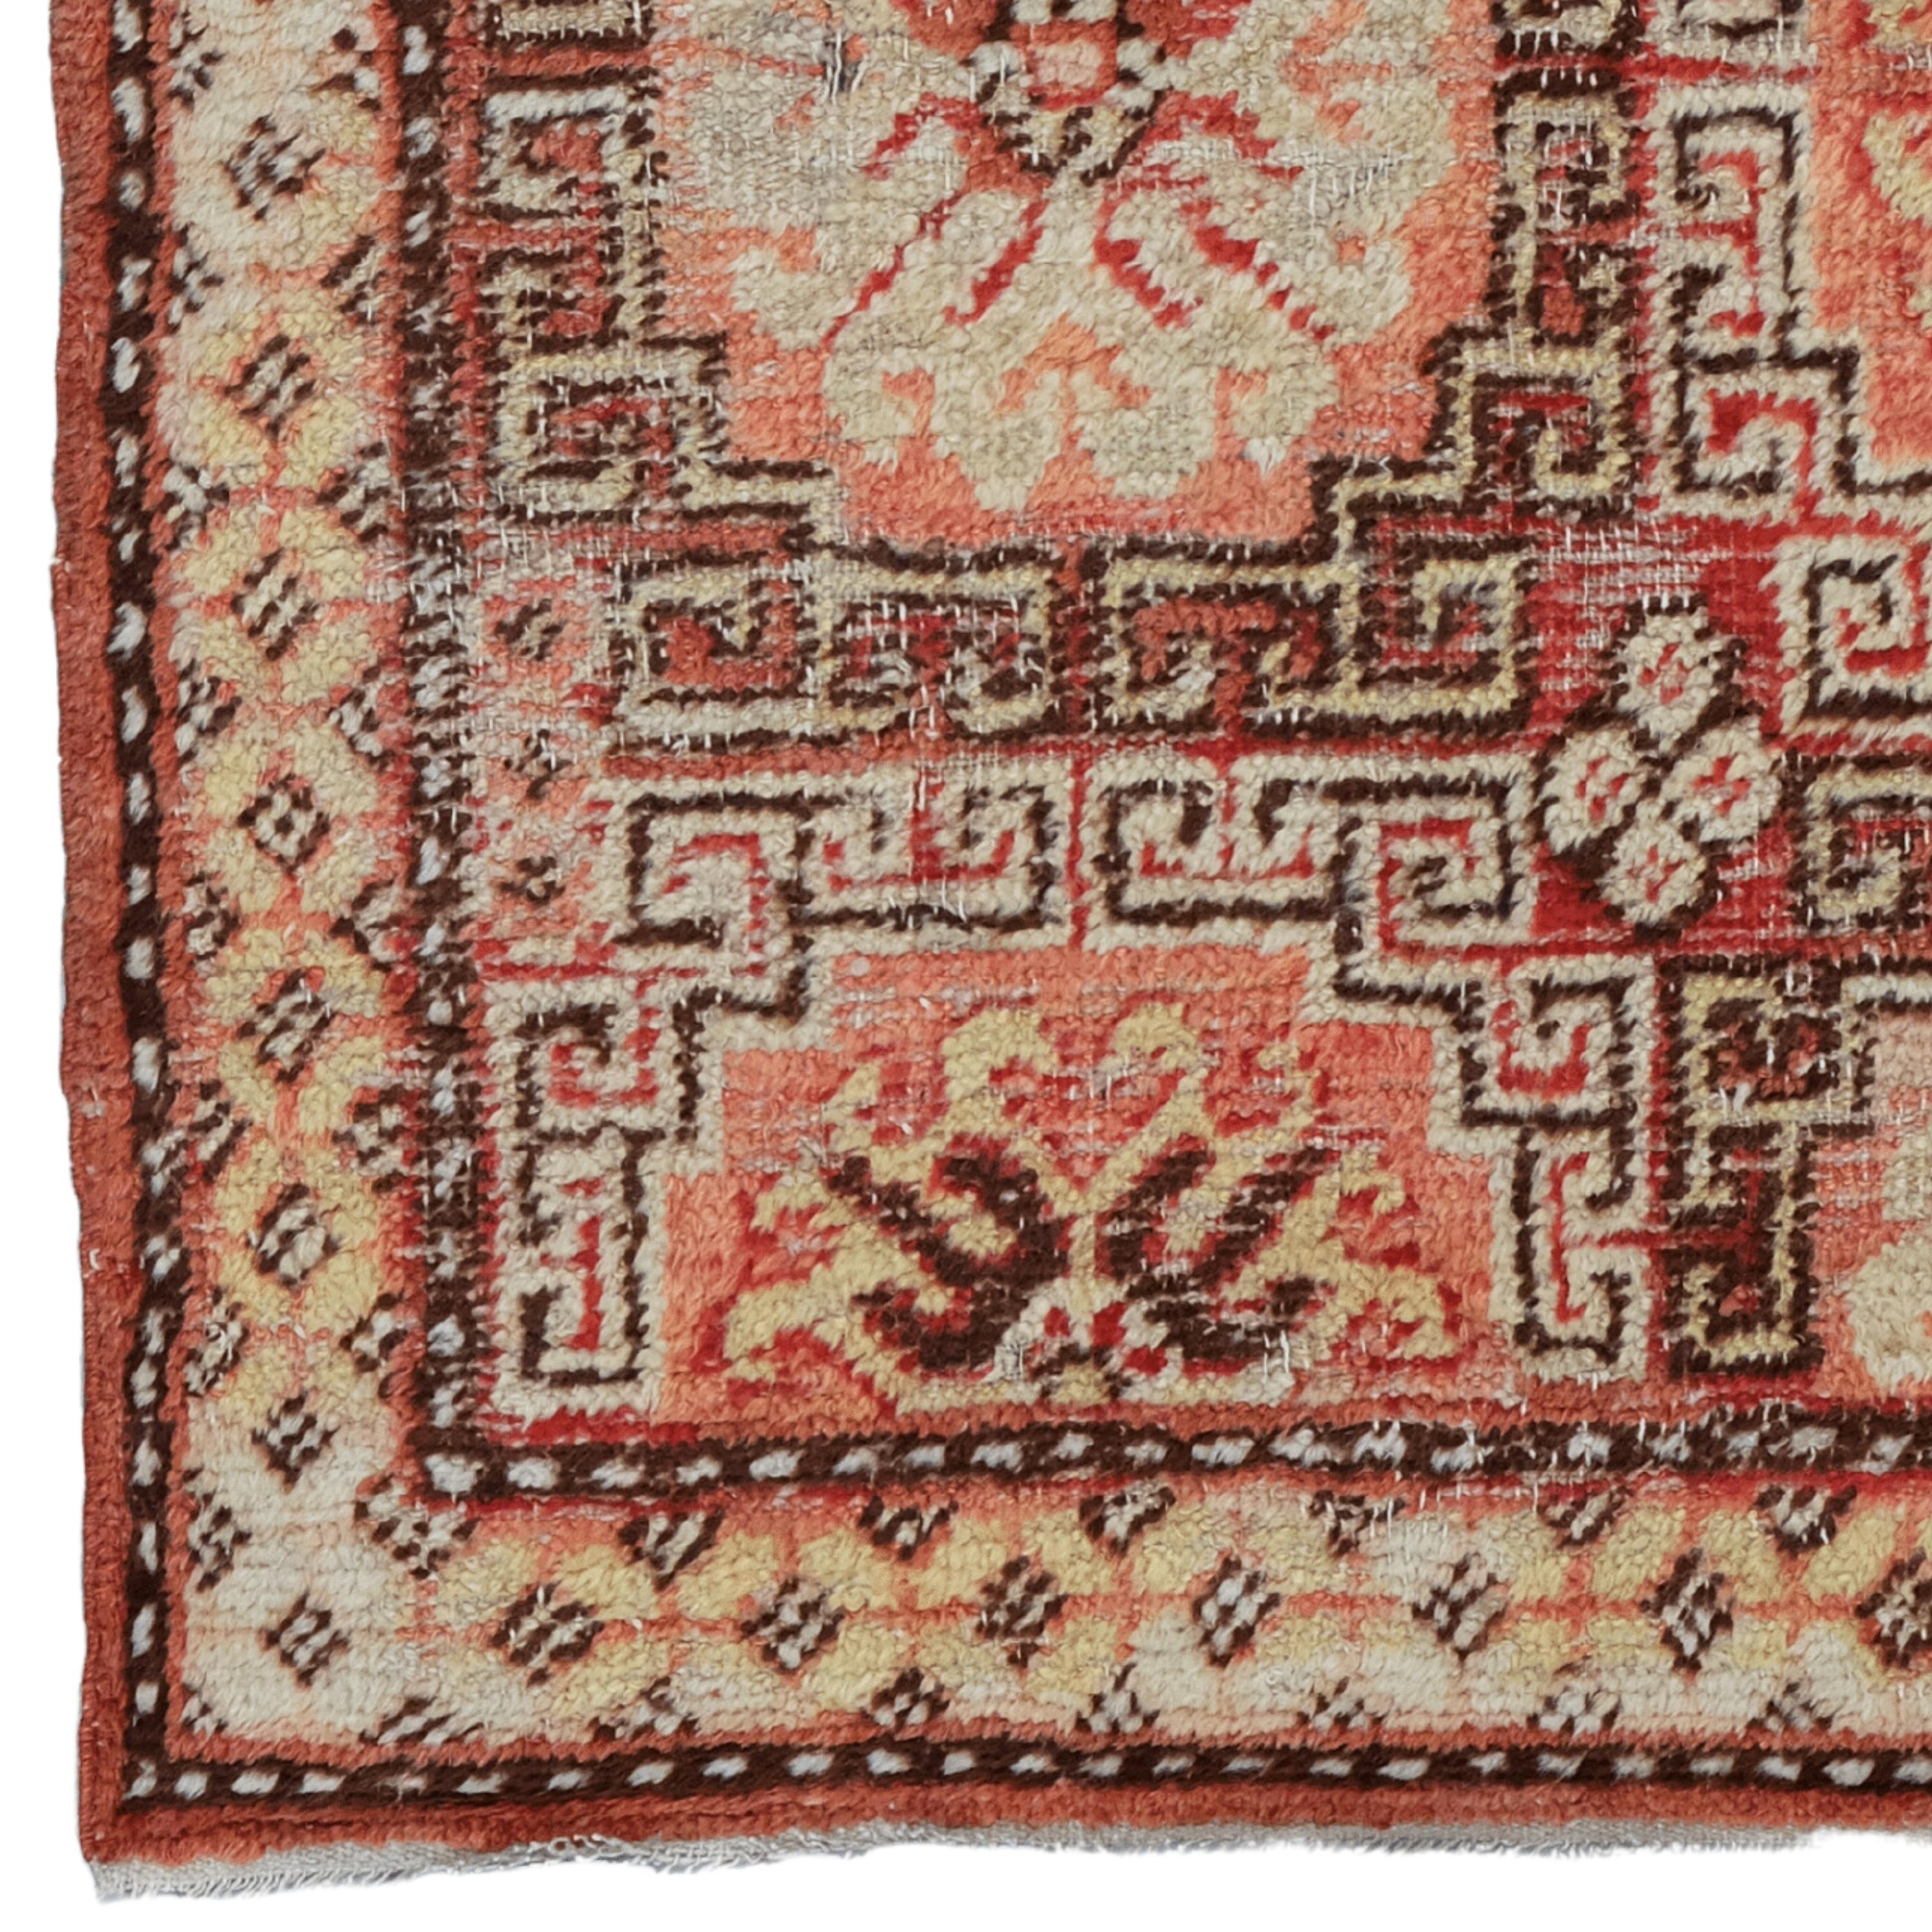 Khotan-Teppich aus dem 19. Jahrhundert - Handgewebter türkischer Teppich

Dieser elegante Khotan-Teppich aus dem 19. Jahrhundert verleiht jedem Raum mit seiner historischen Textur und seinem raffinierten Design eine edle Note. Dieses handgefertigte